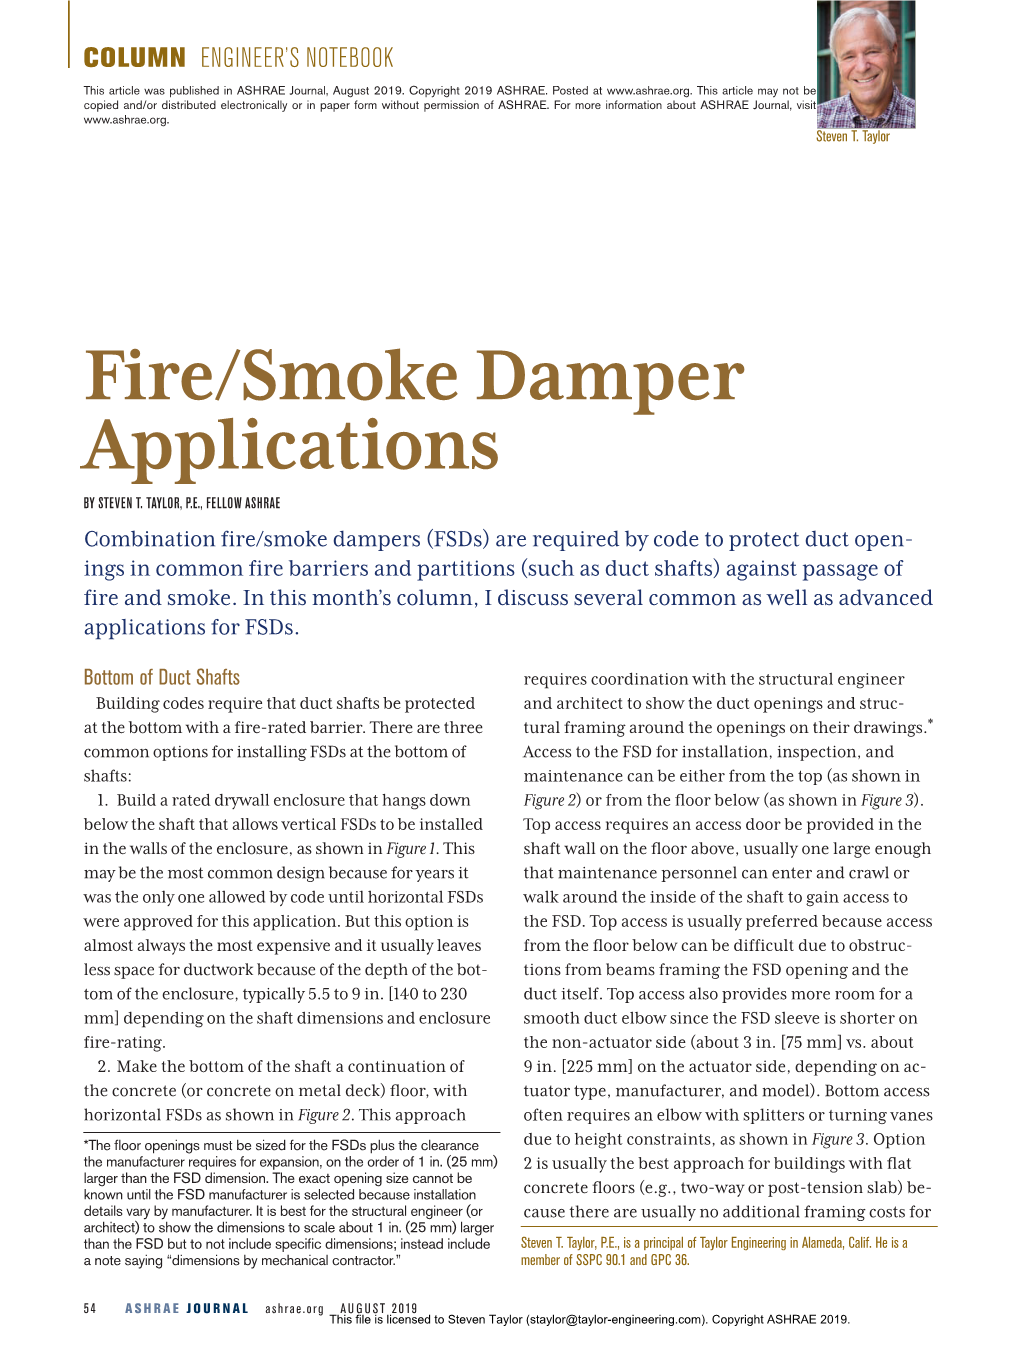 Fire/Smoke Damper Applications by STEVEN T